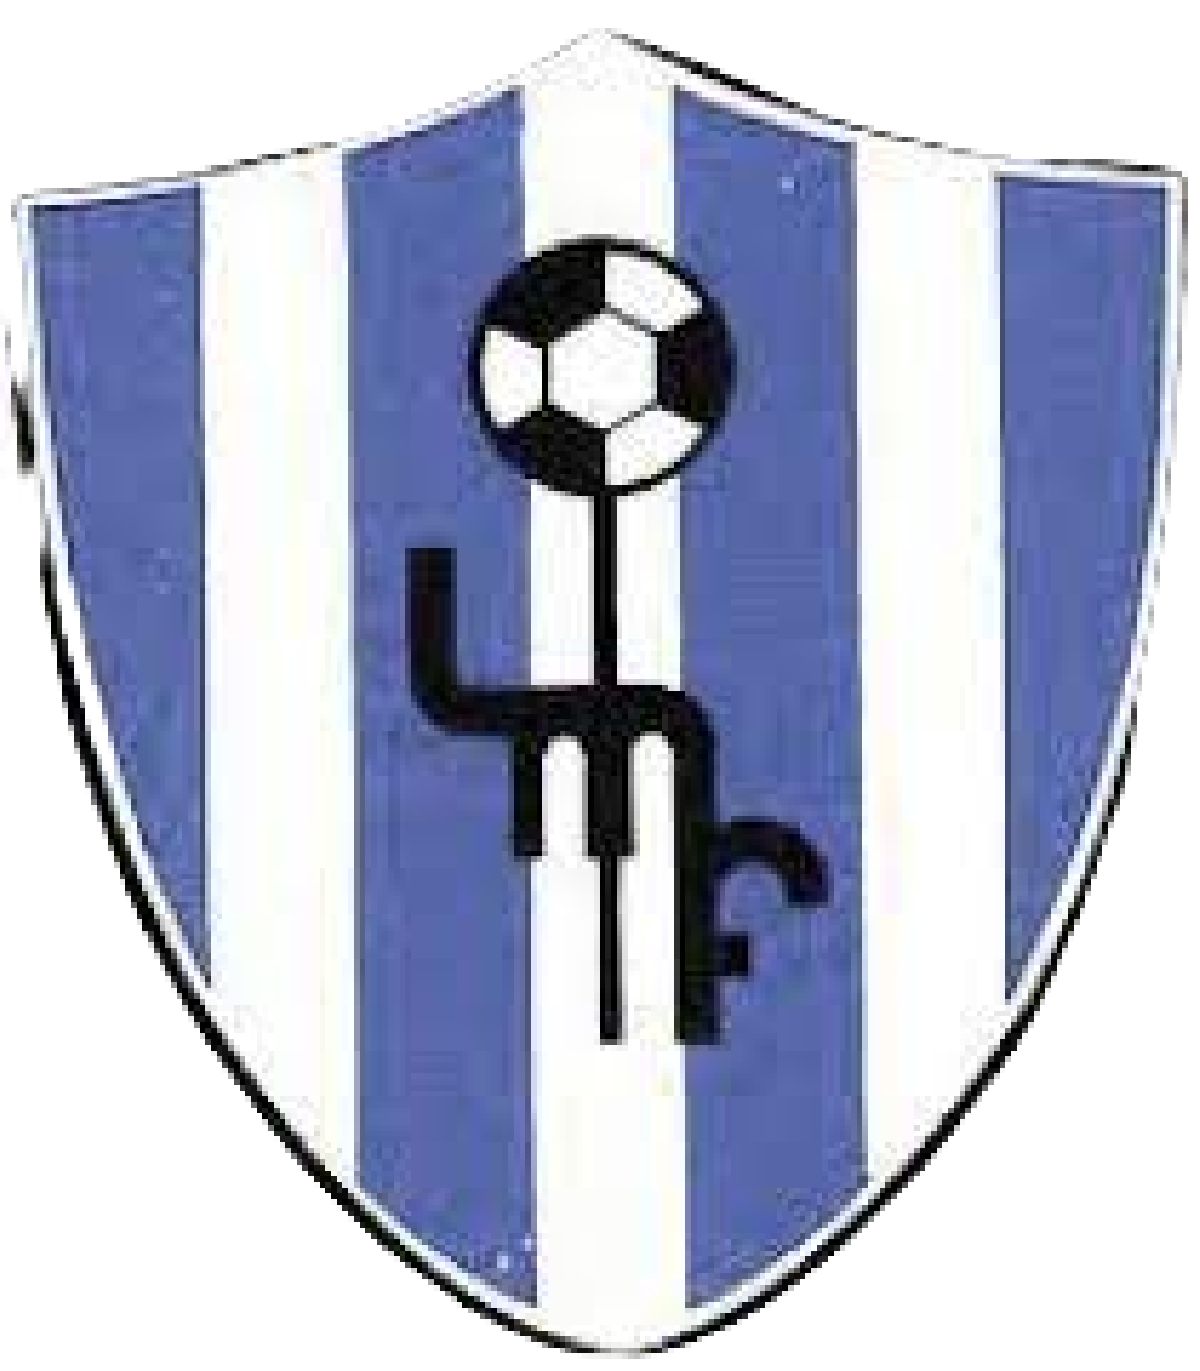 Club Atletico Independiente de General Madariaga Logo PNG